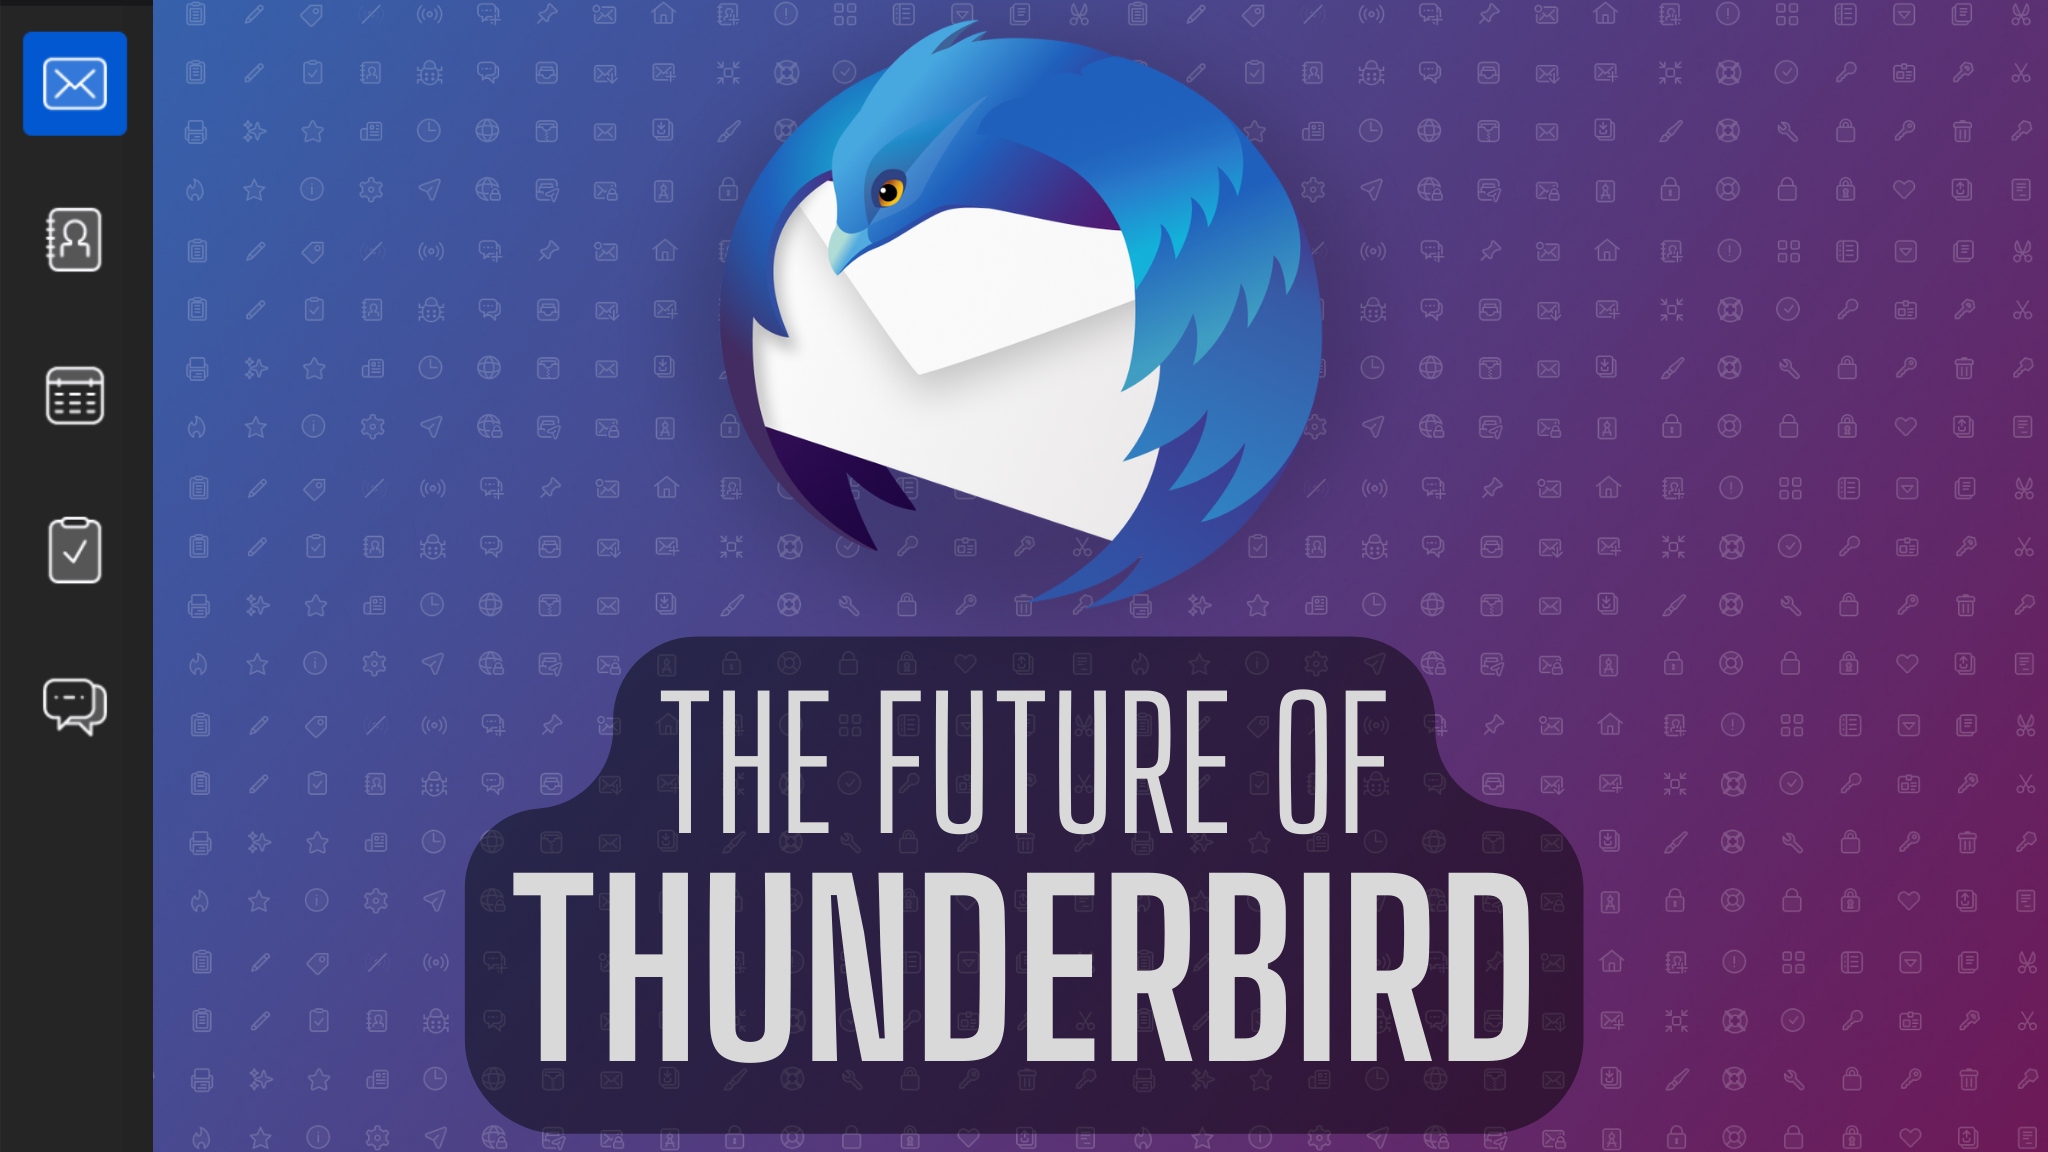 The Future of Thunderbird